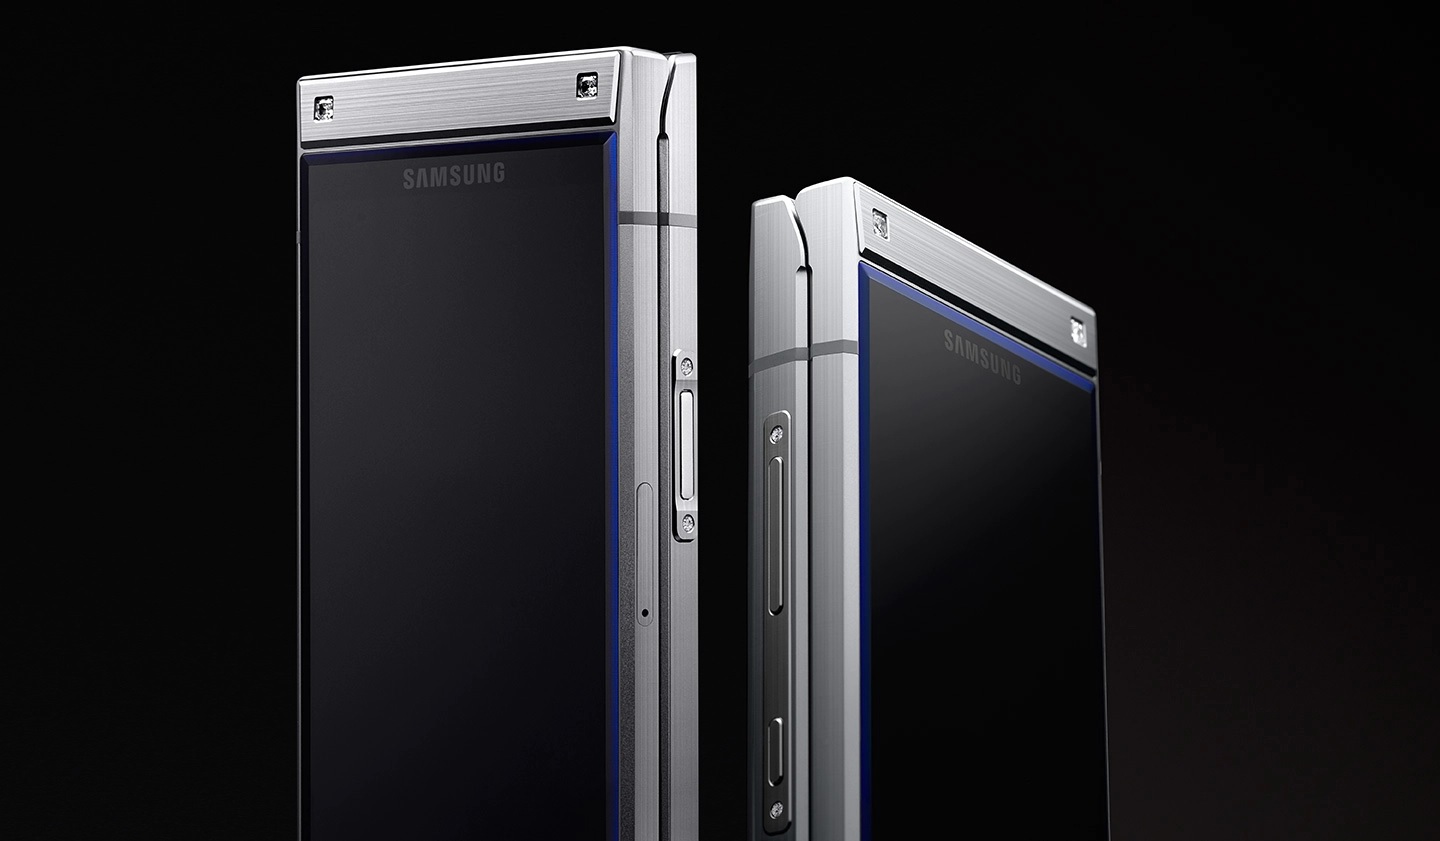 The Samsung Galaxy W2019 in silver.